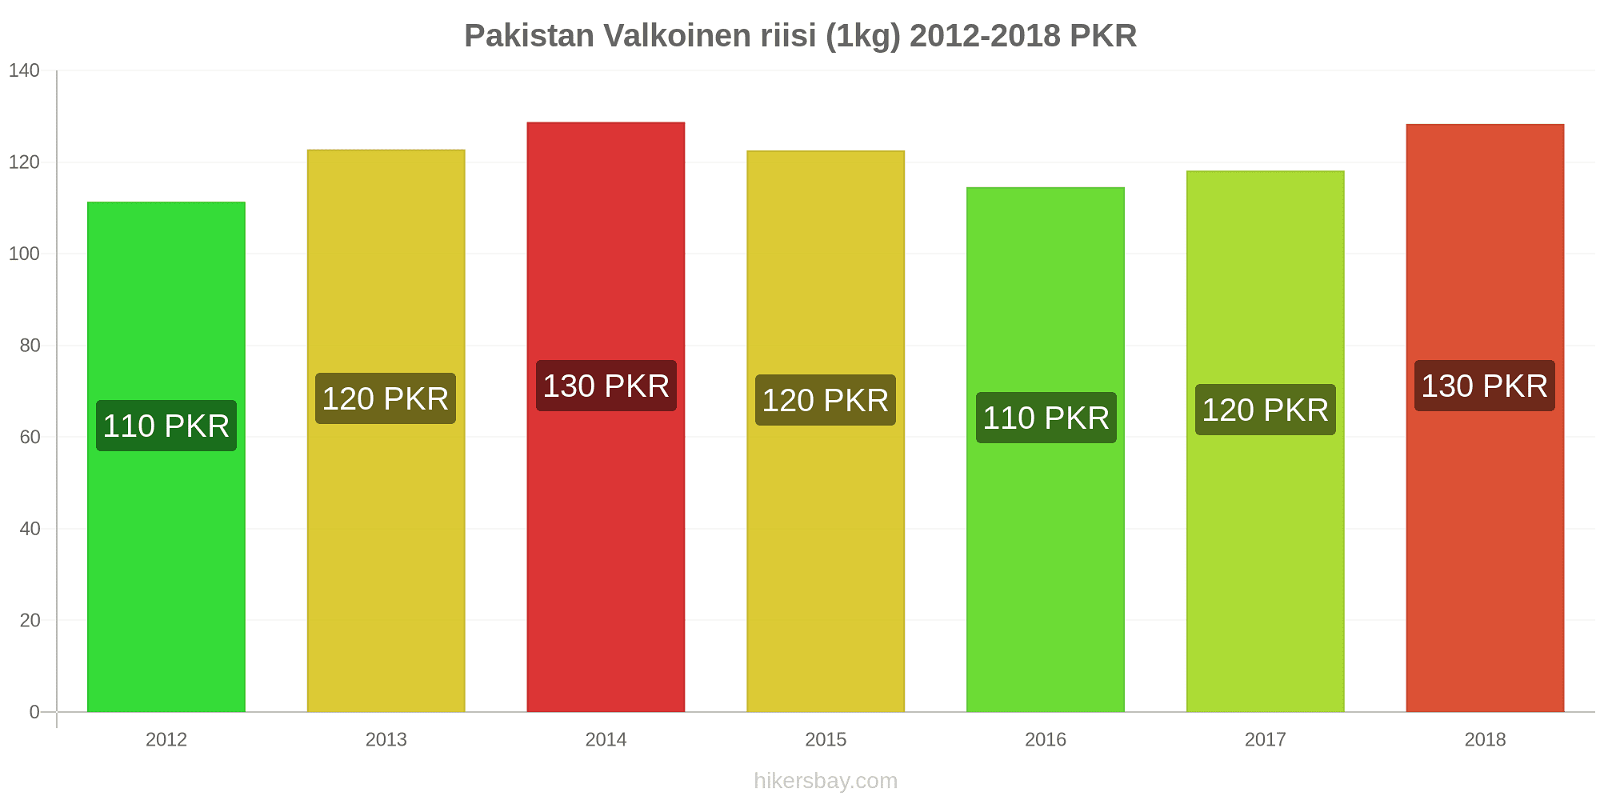 Pakistan hintojen muutokset Valkoinen riisi (1kg) hikersbay.com